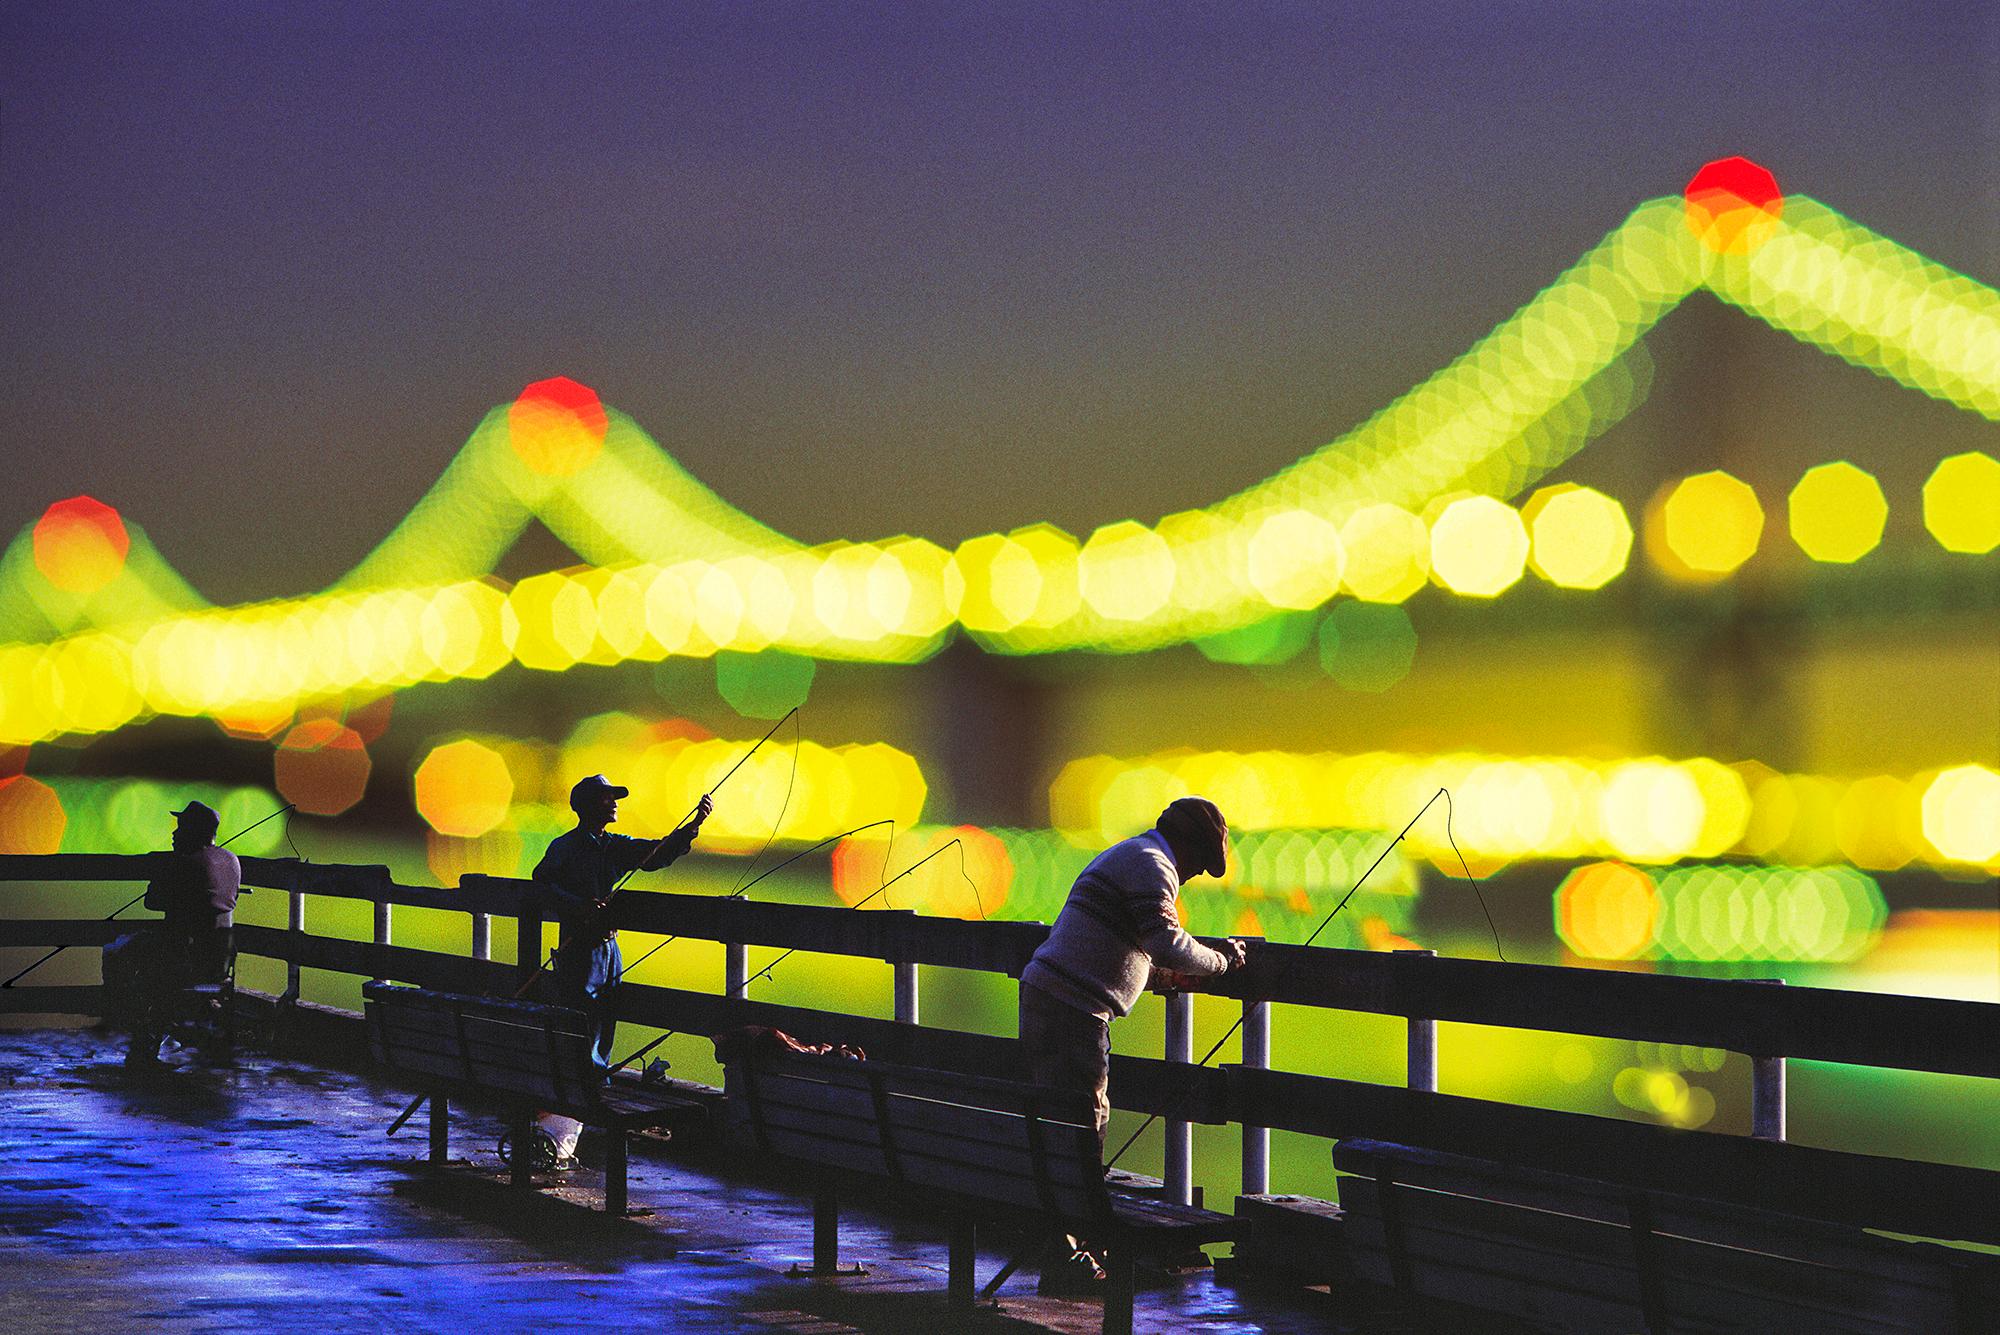 Mitchell Funk Landscape Photograph – Wir sind alle Fischer.   Figuren und Out of Focus Lights San Francisco Bay Bridge